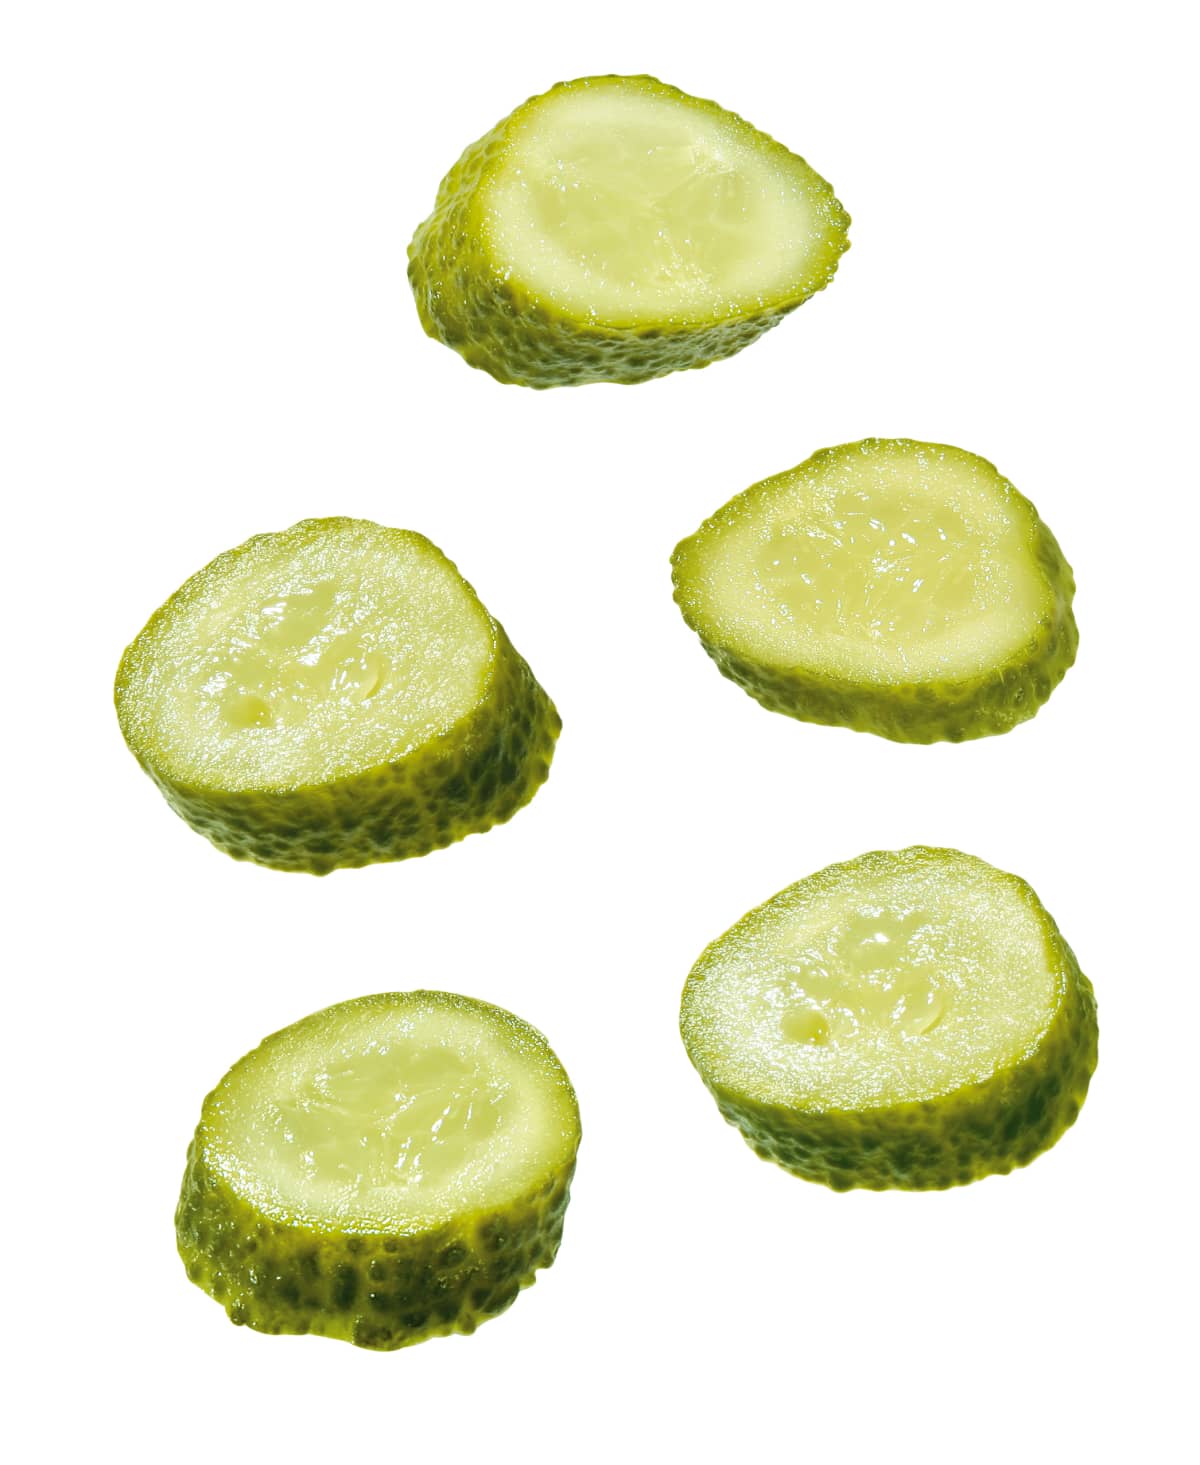 Sliced pickles on white background. 